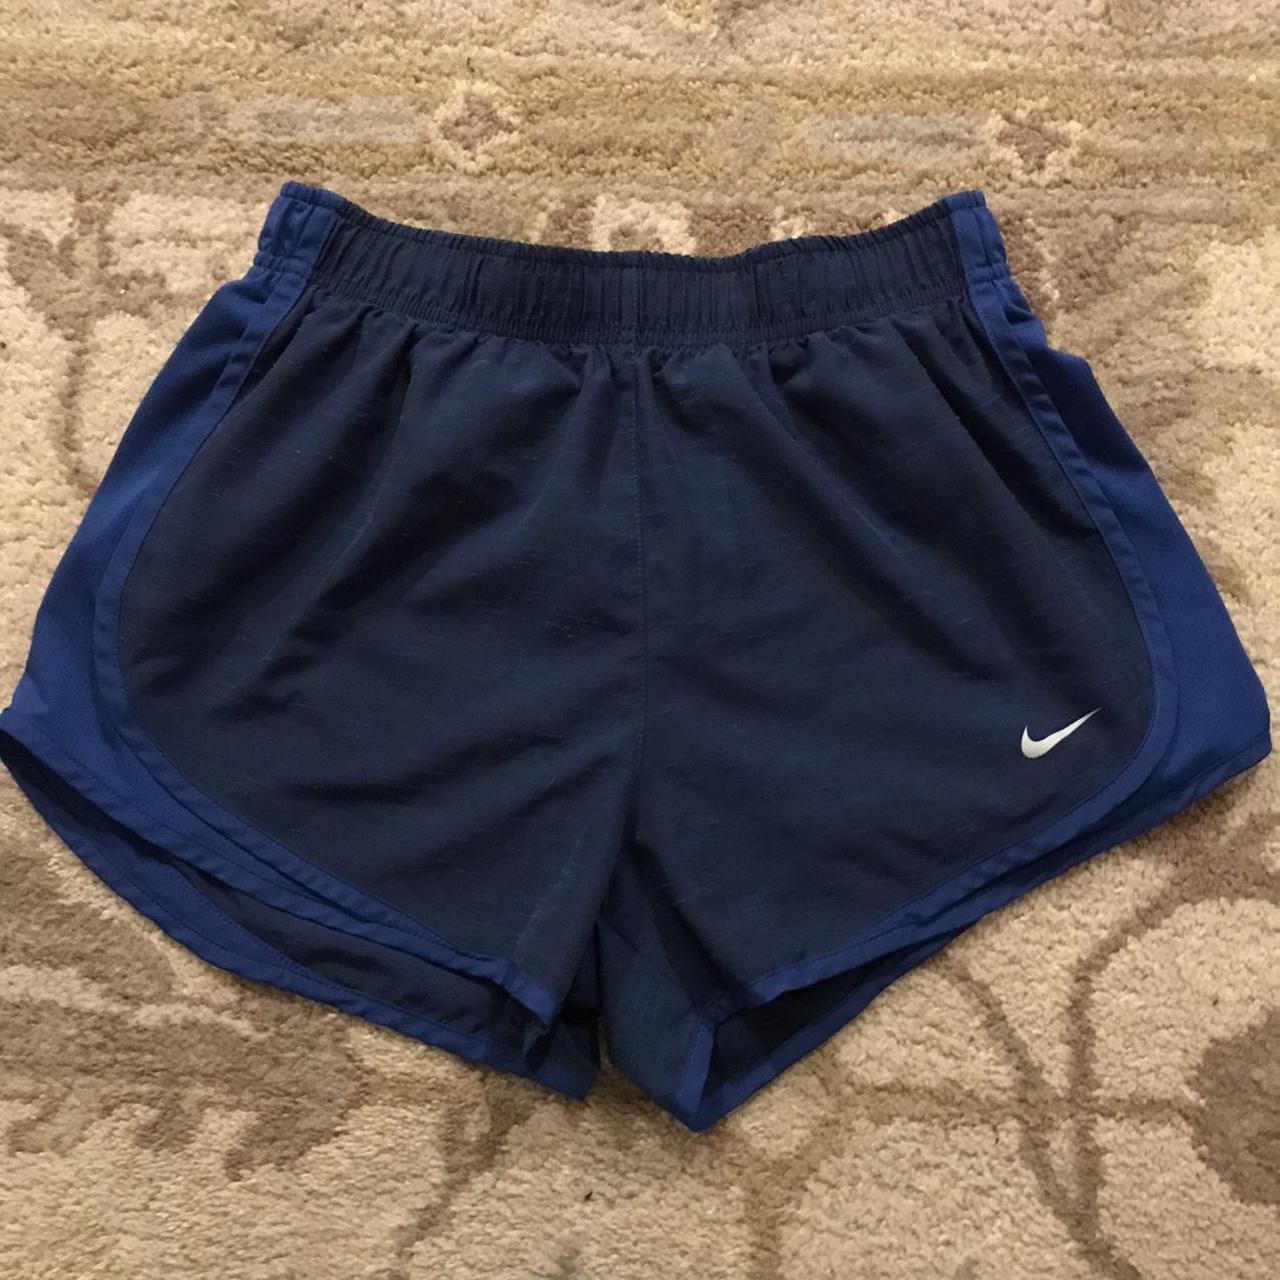 Nike Women's Blue Shorts